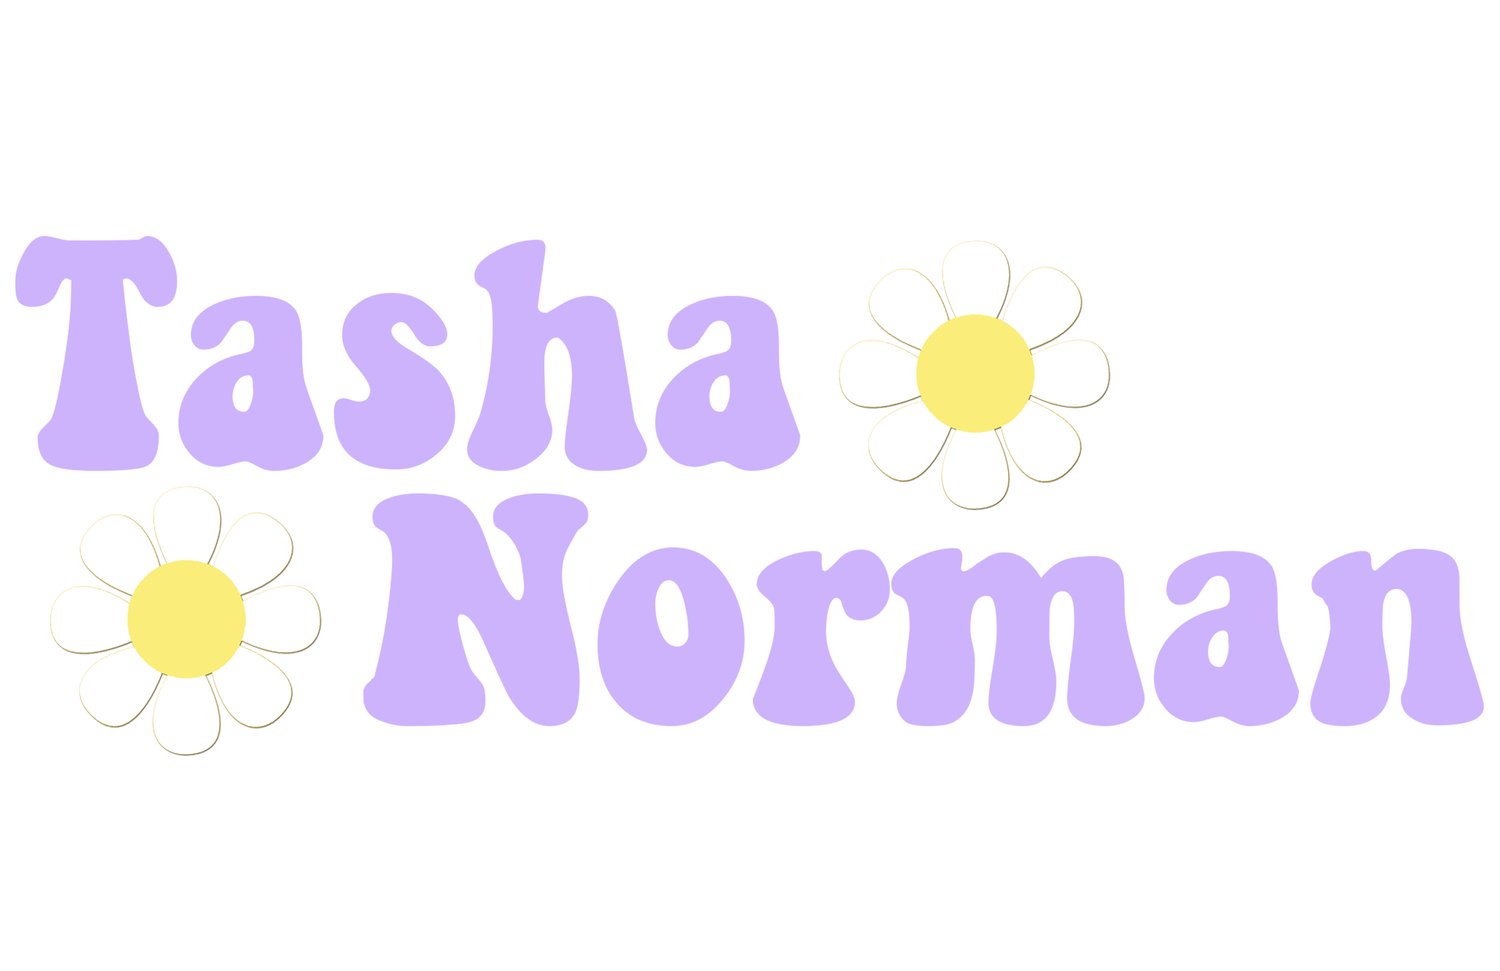 Tasha Norman